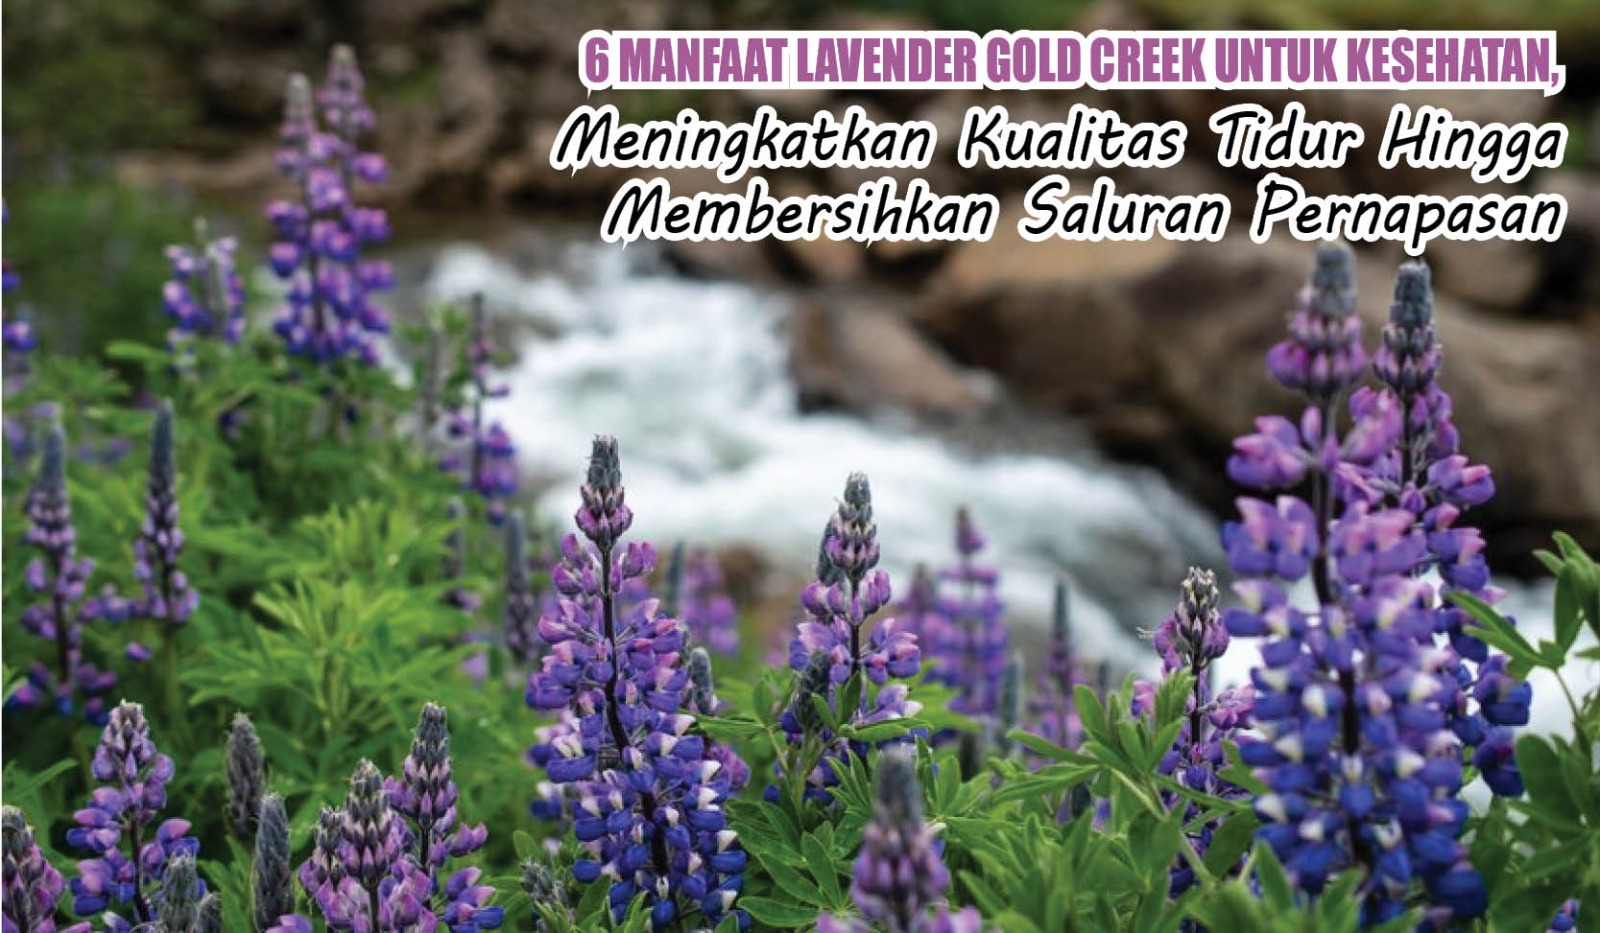 6 Manfaat Lavender Gold Creek untuk Kesehatan, Meningkatkan Kualitas Tidur Hingga Bersihkan Saluran Pernapasan